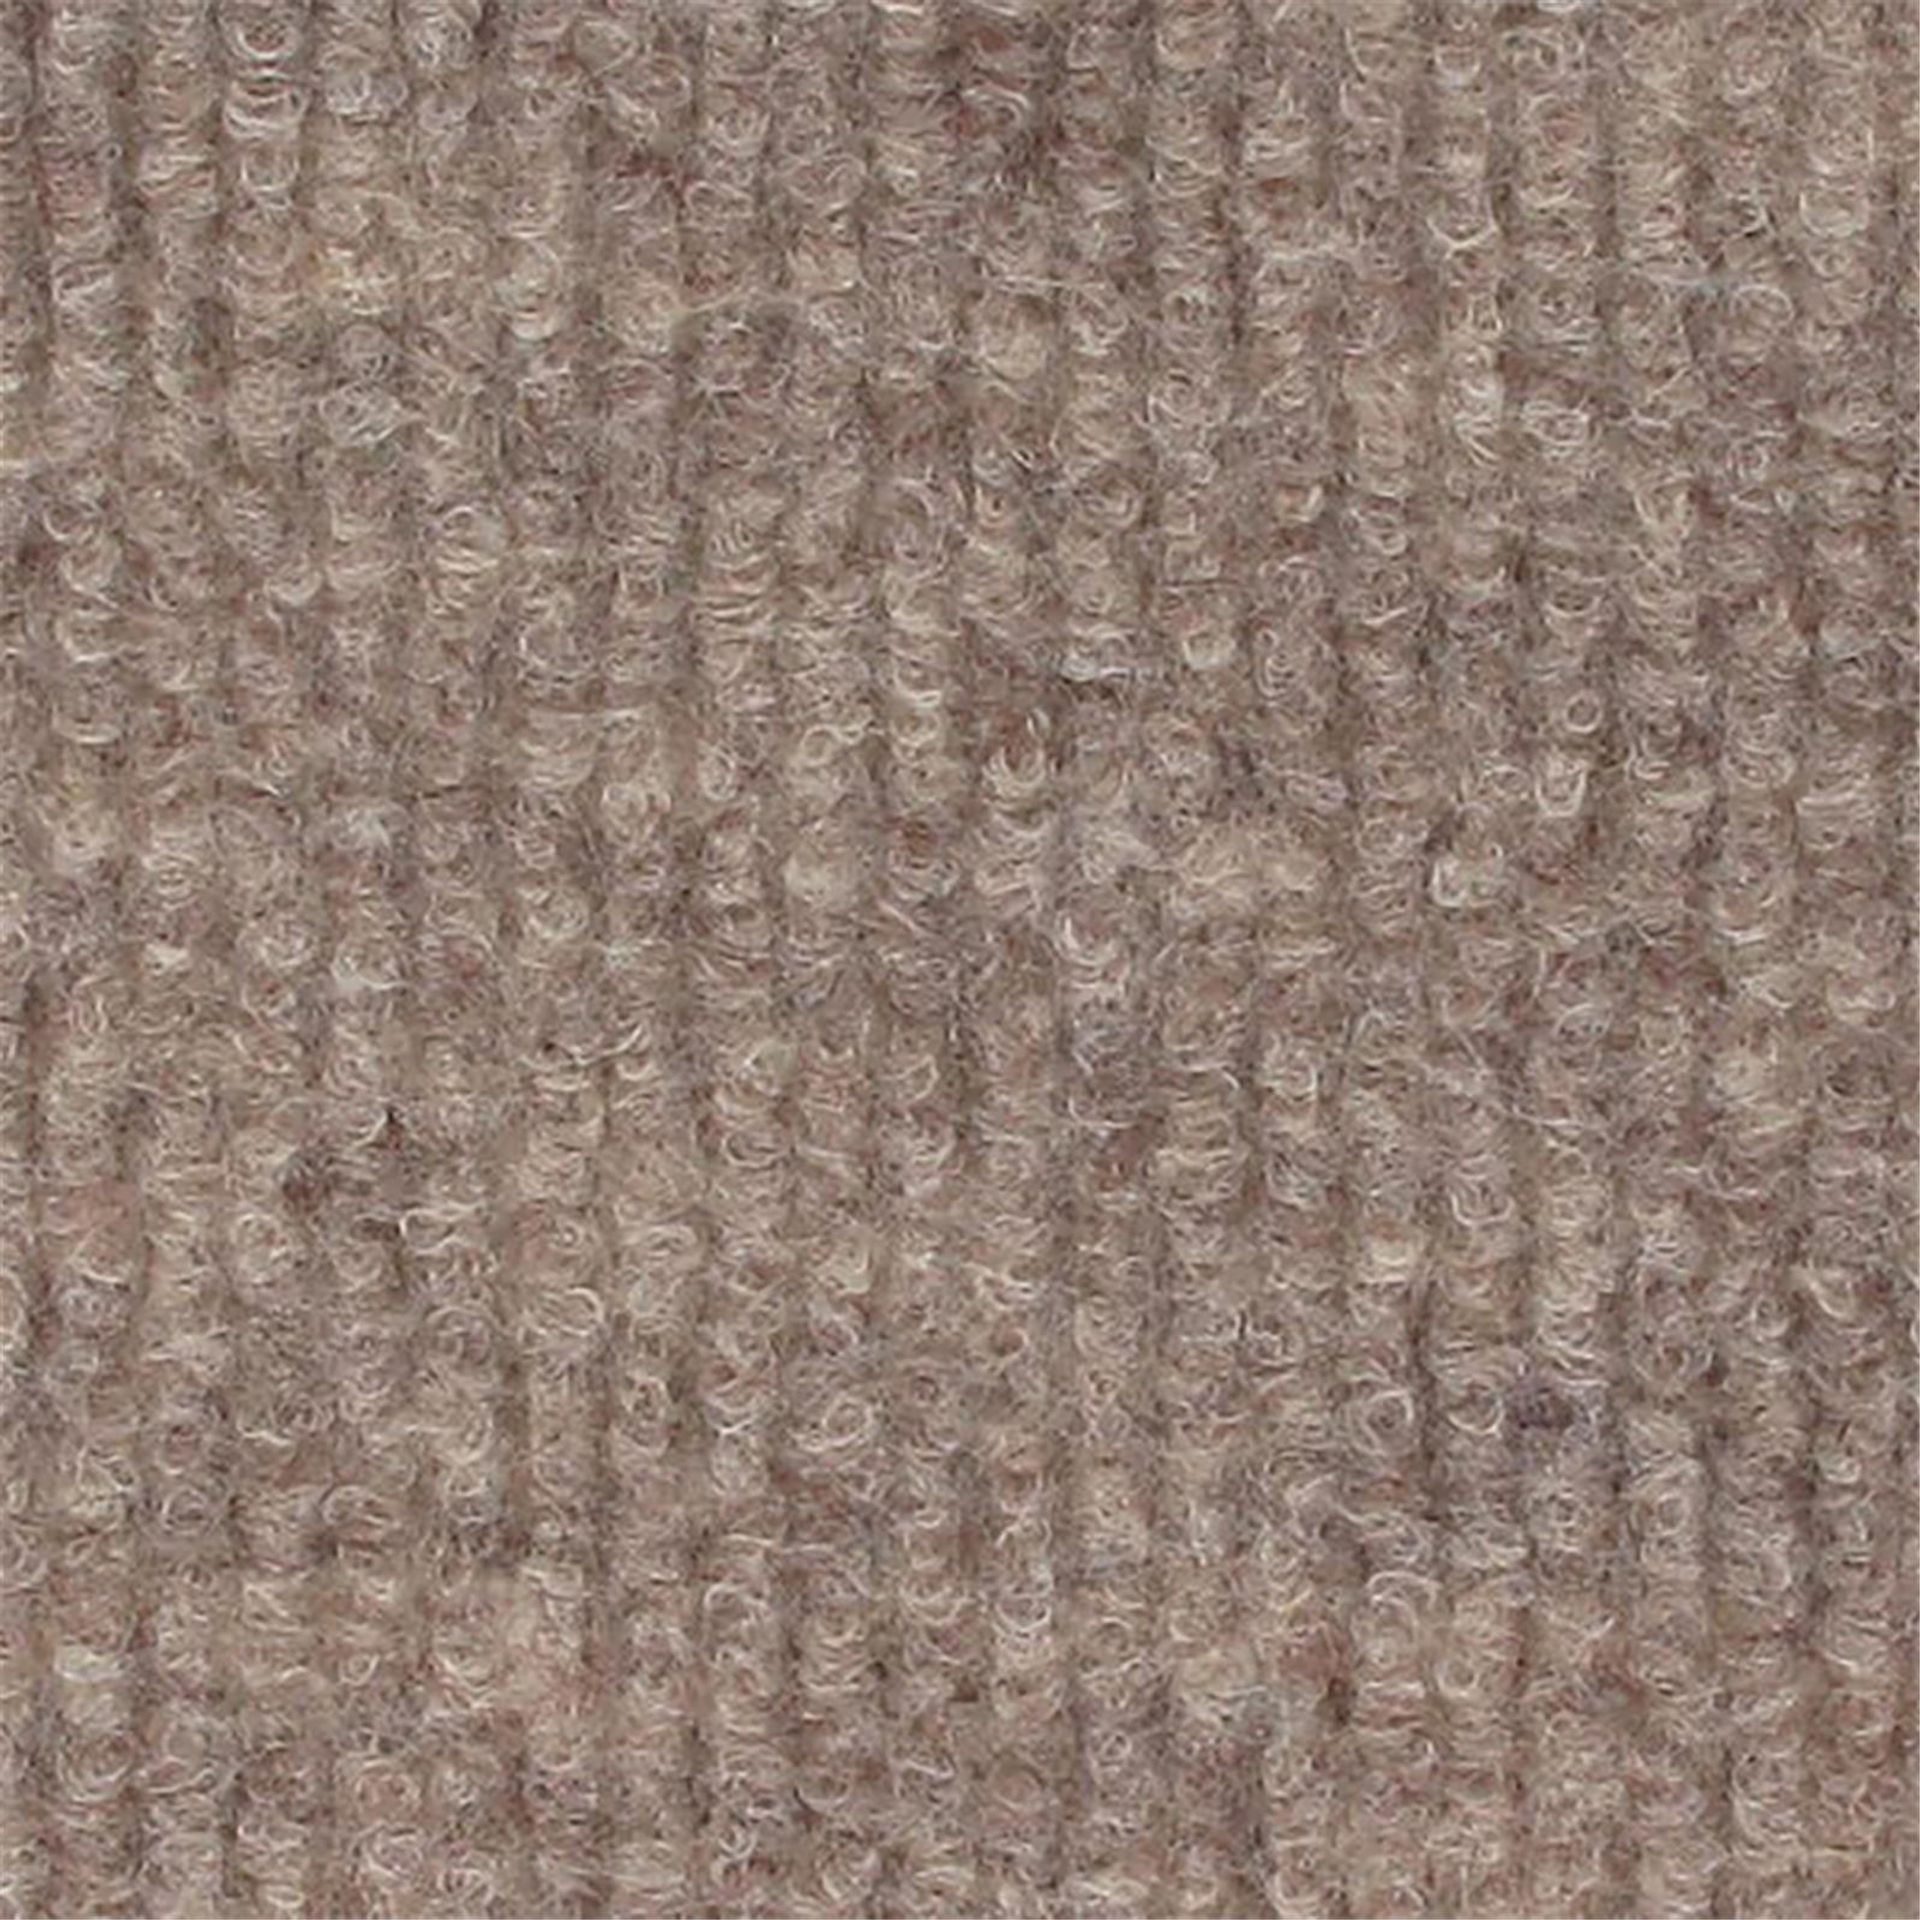 Messeboden Rips-Nadelvlies EXPOLINE Sahara Beige 0906 100qm ohne Schutzfolie - Rollenbreite 200 cm